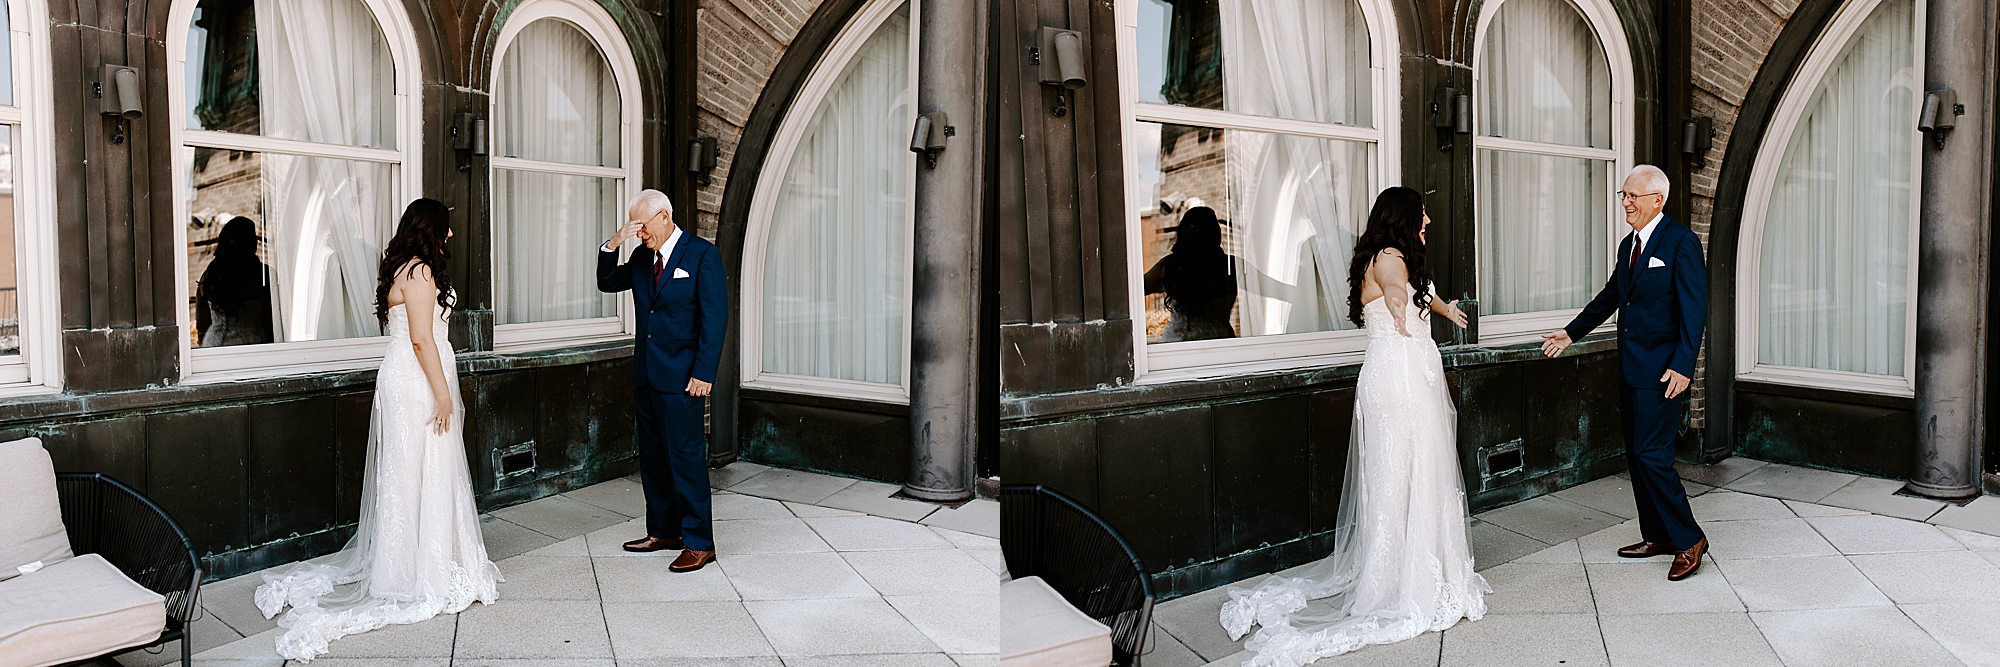 personalized wedding, Pittsburgh wedding photographer, Rachel Wehan Photography